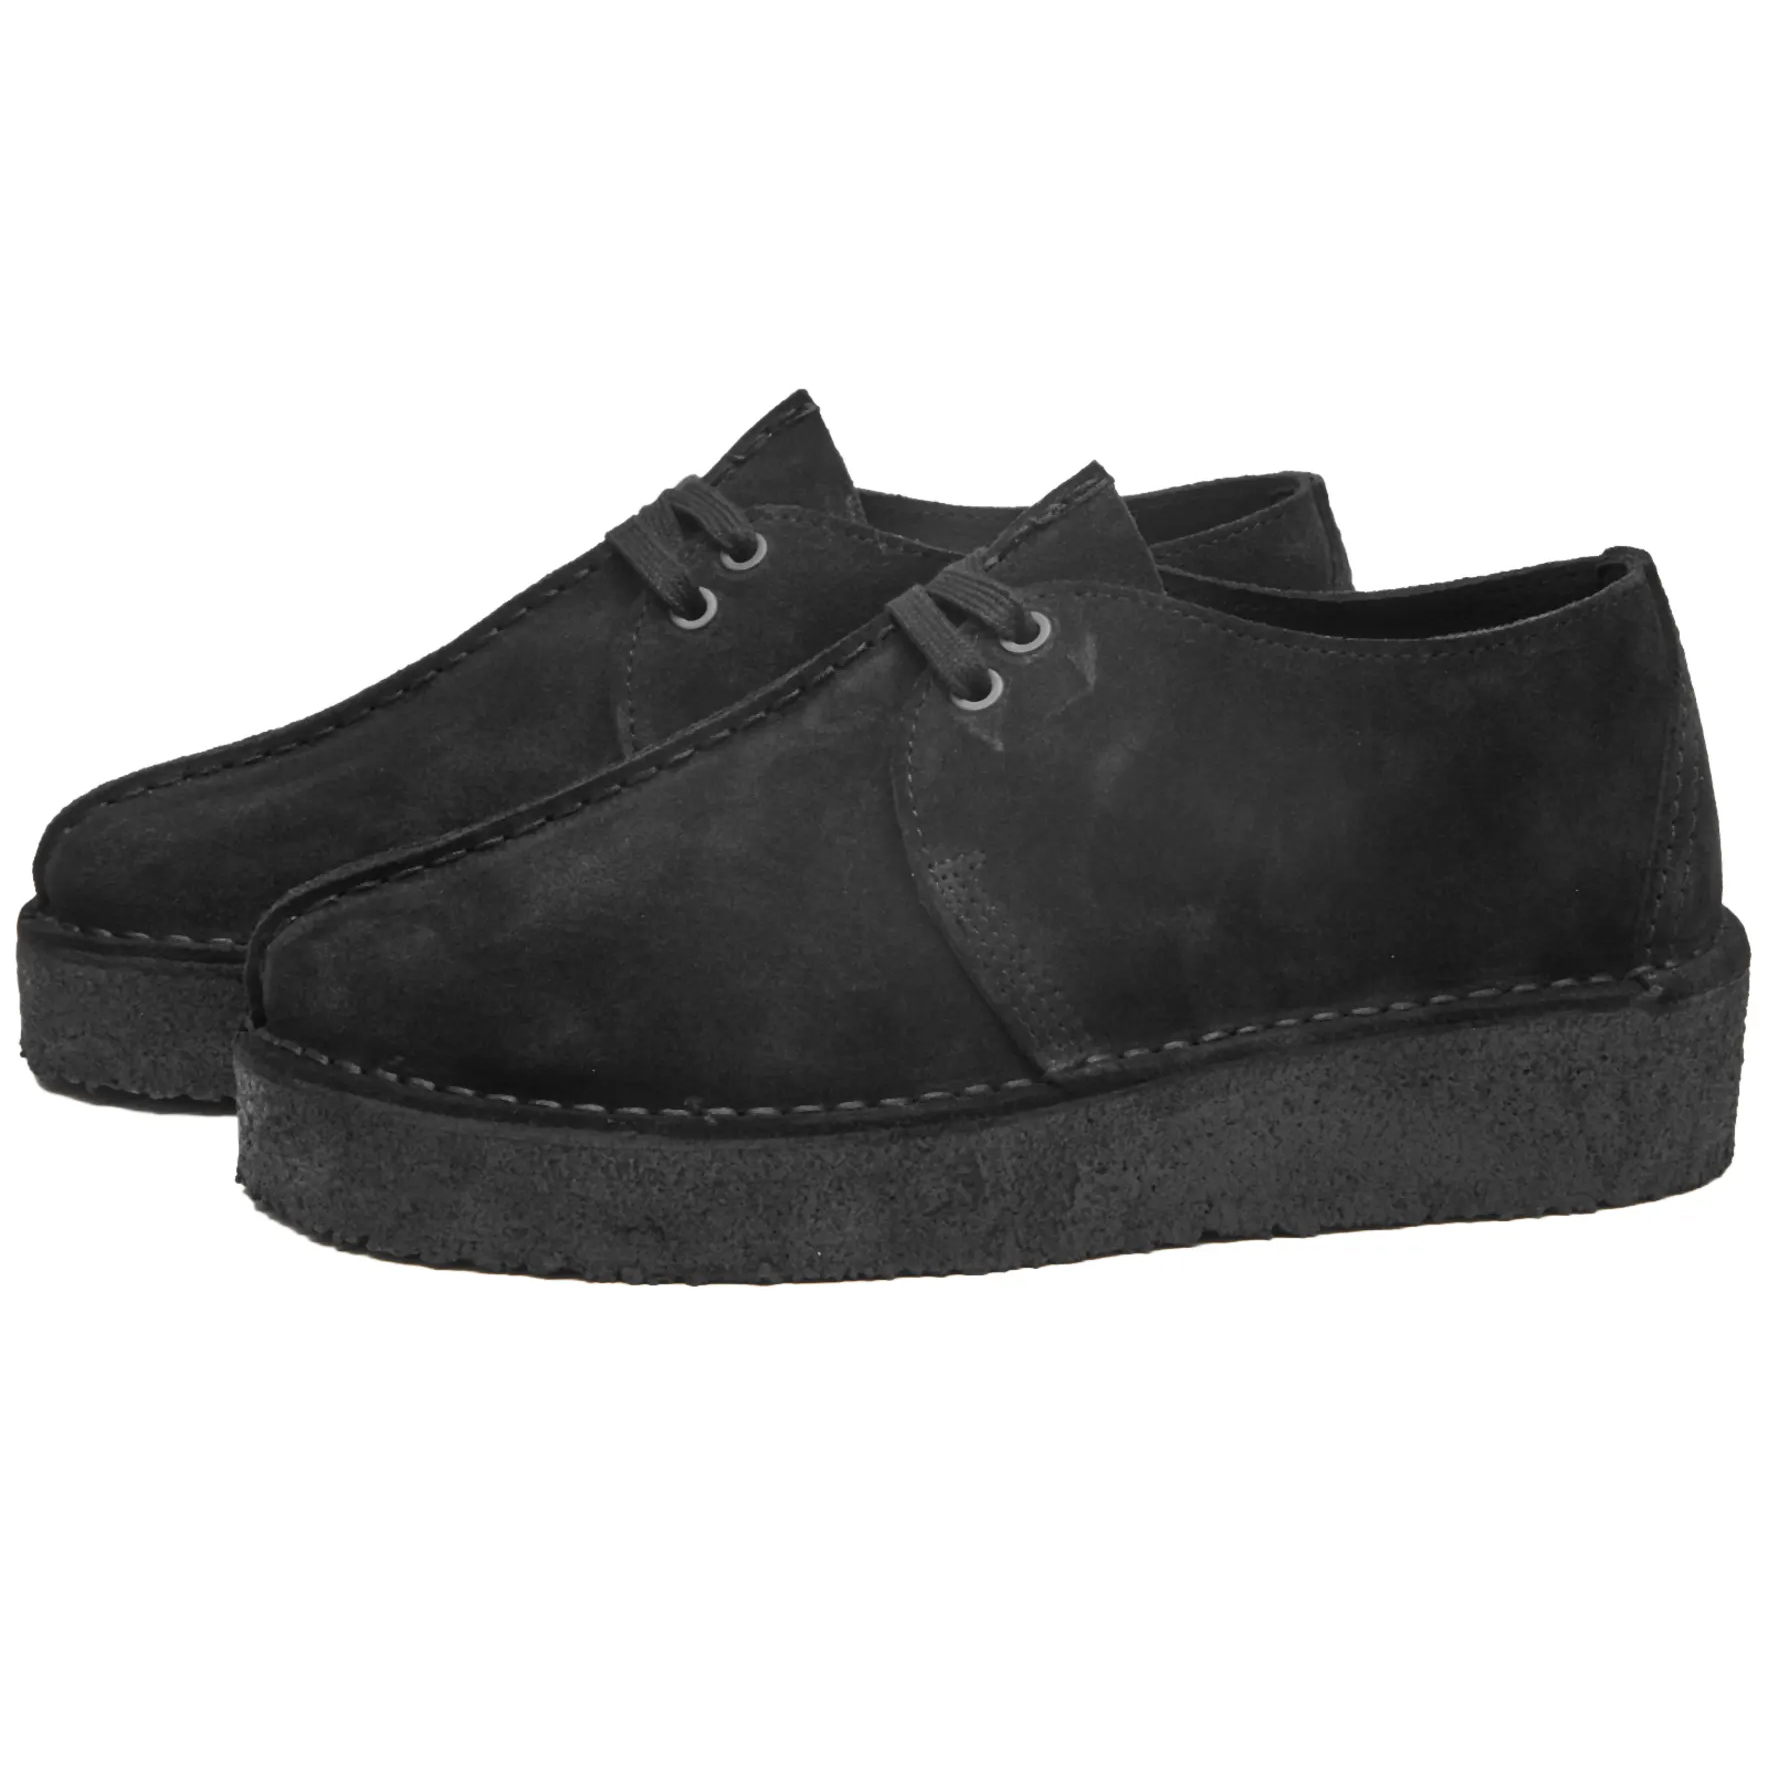 Ботинки Clarks Originals Trek Wedge, черный кроссовки clarks originals zapatillas black